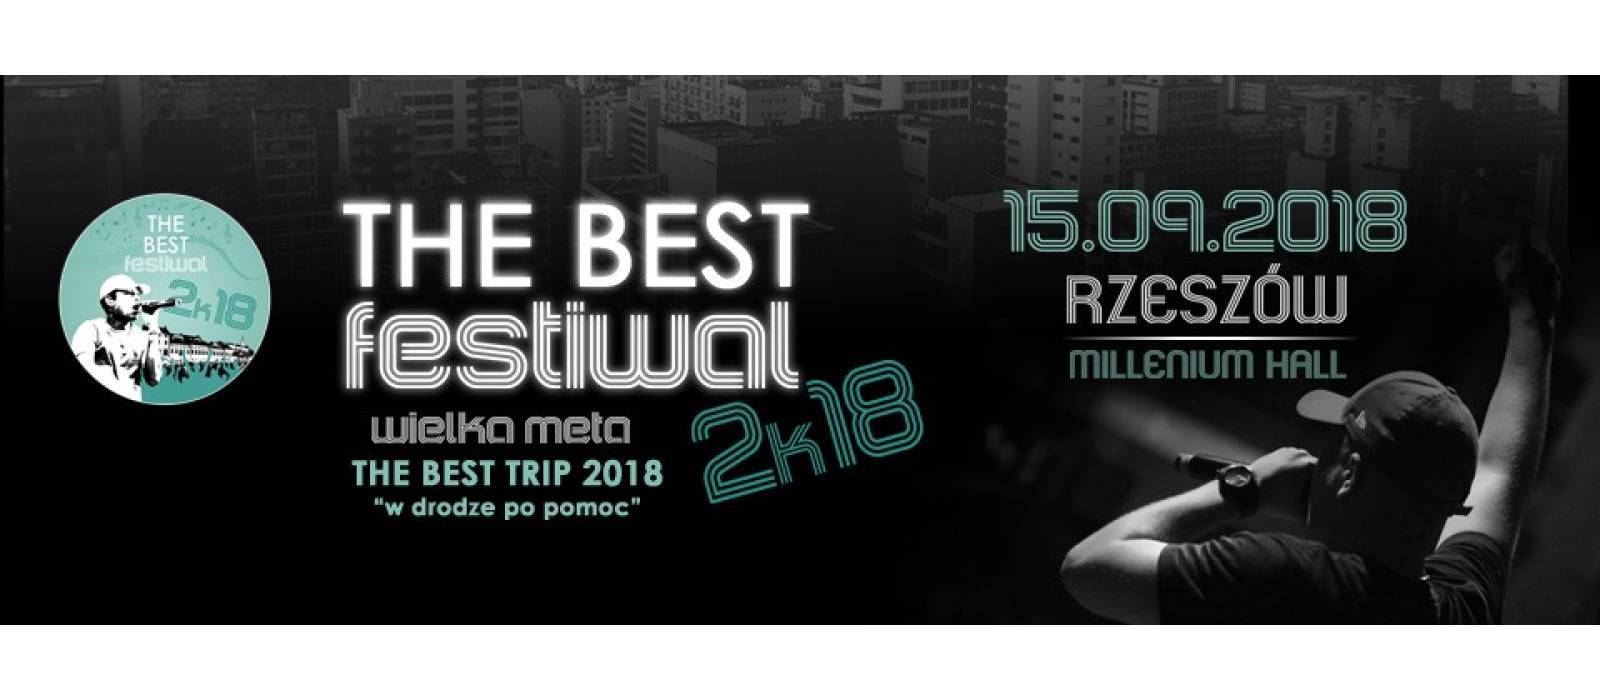 The Best Festiwal 2k18 - 1